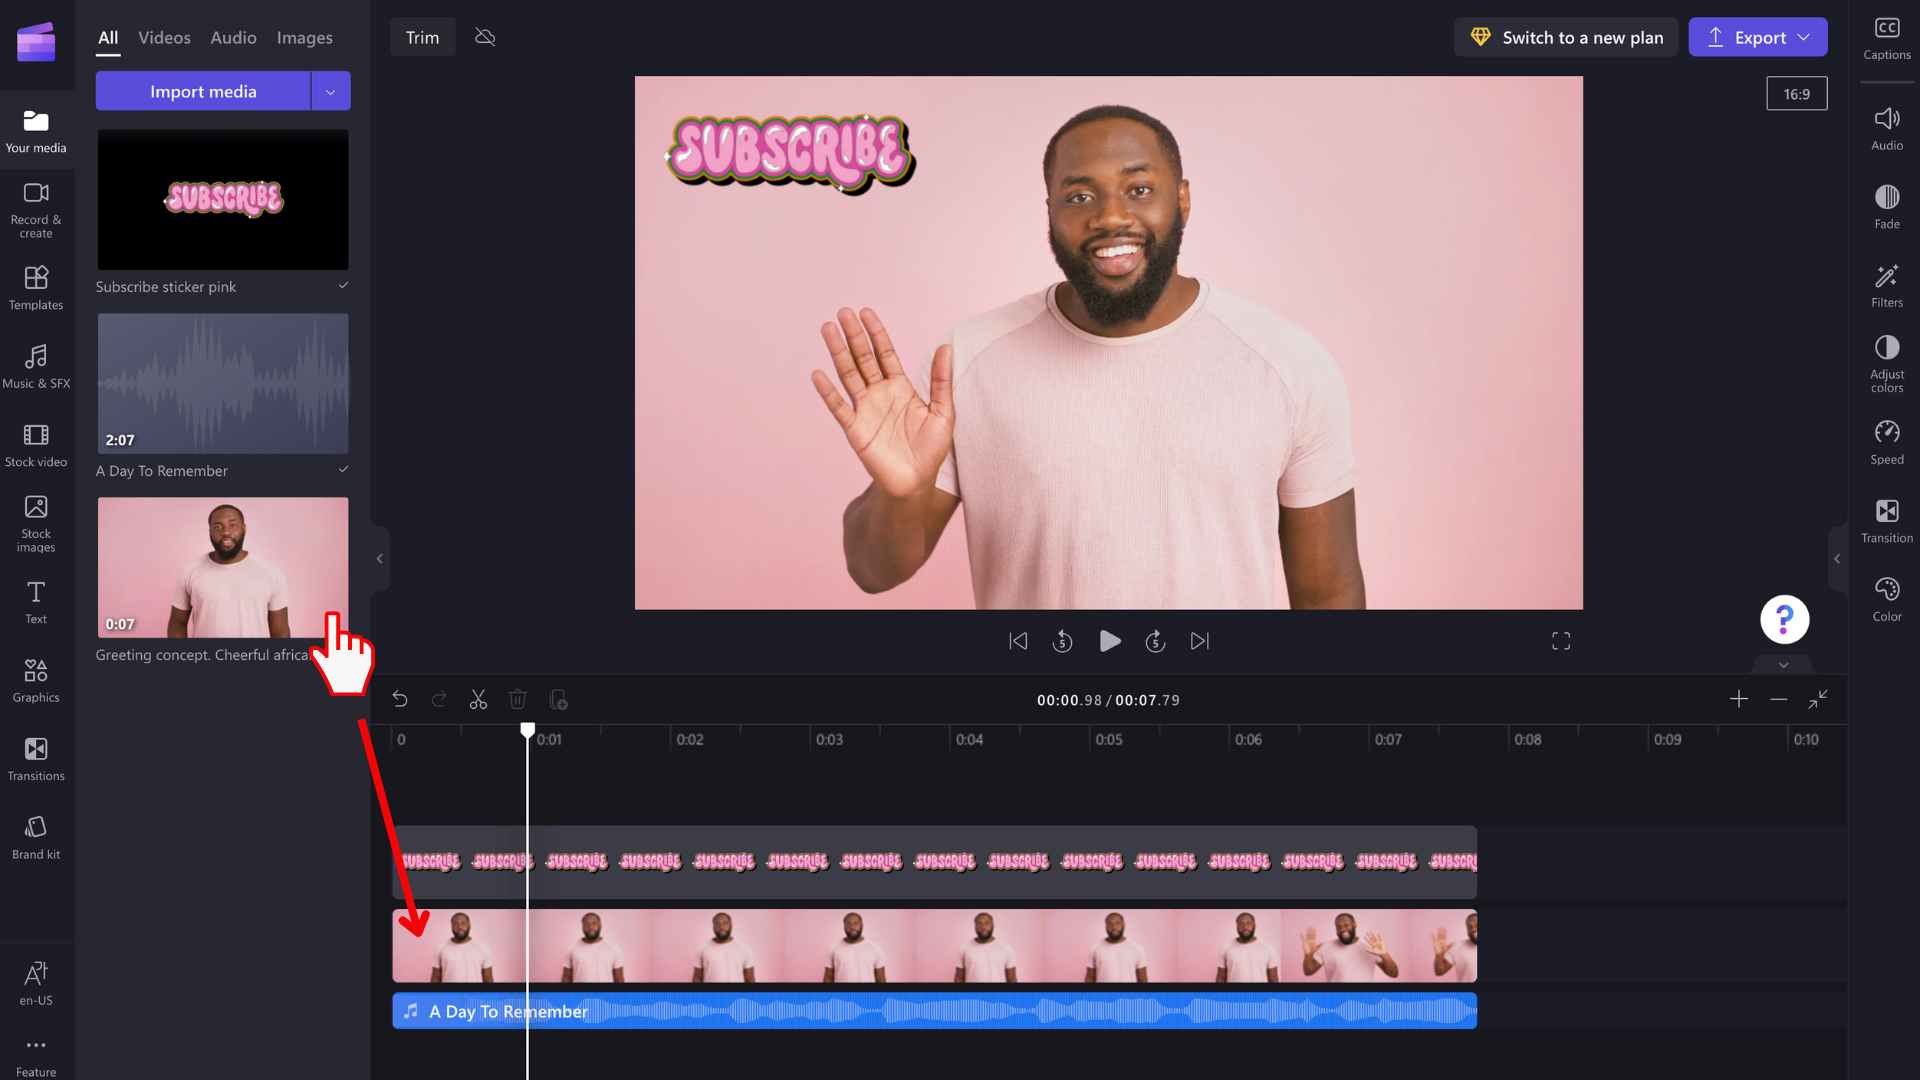 O imagine cu un utilizator adăugând un videoclip în cronologie.